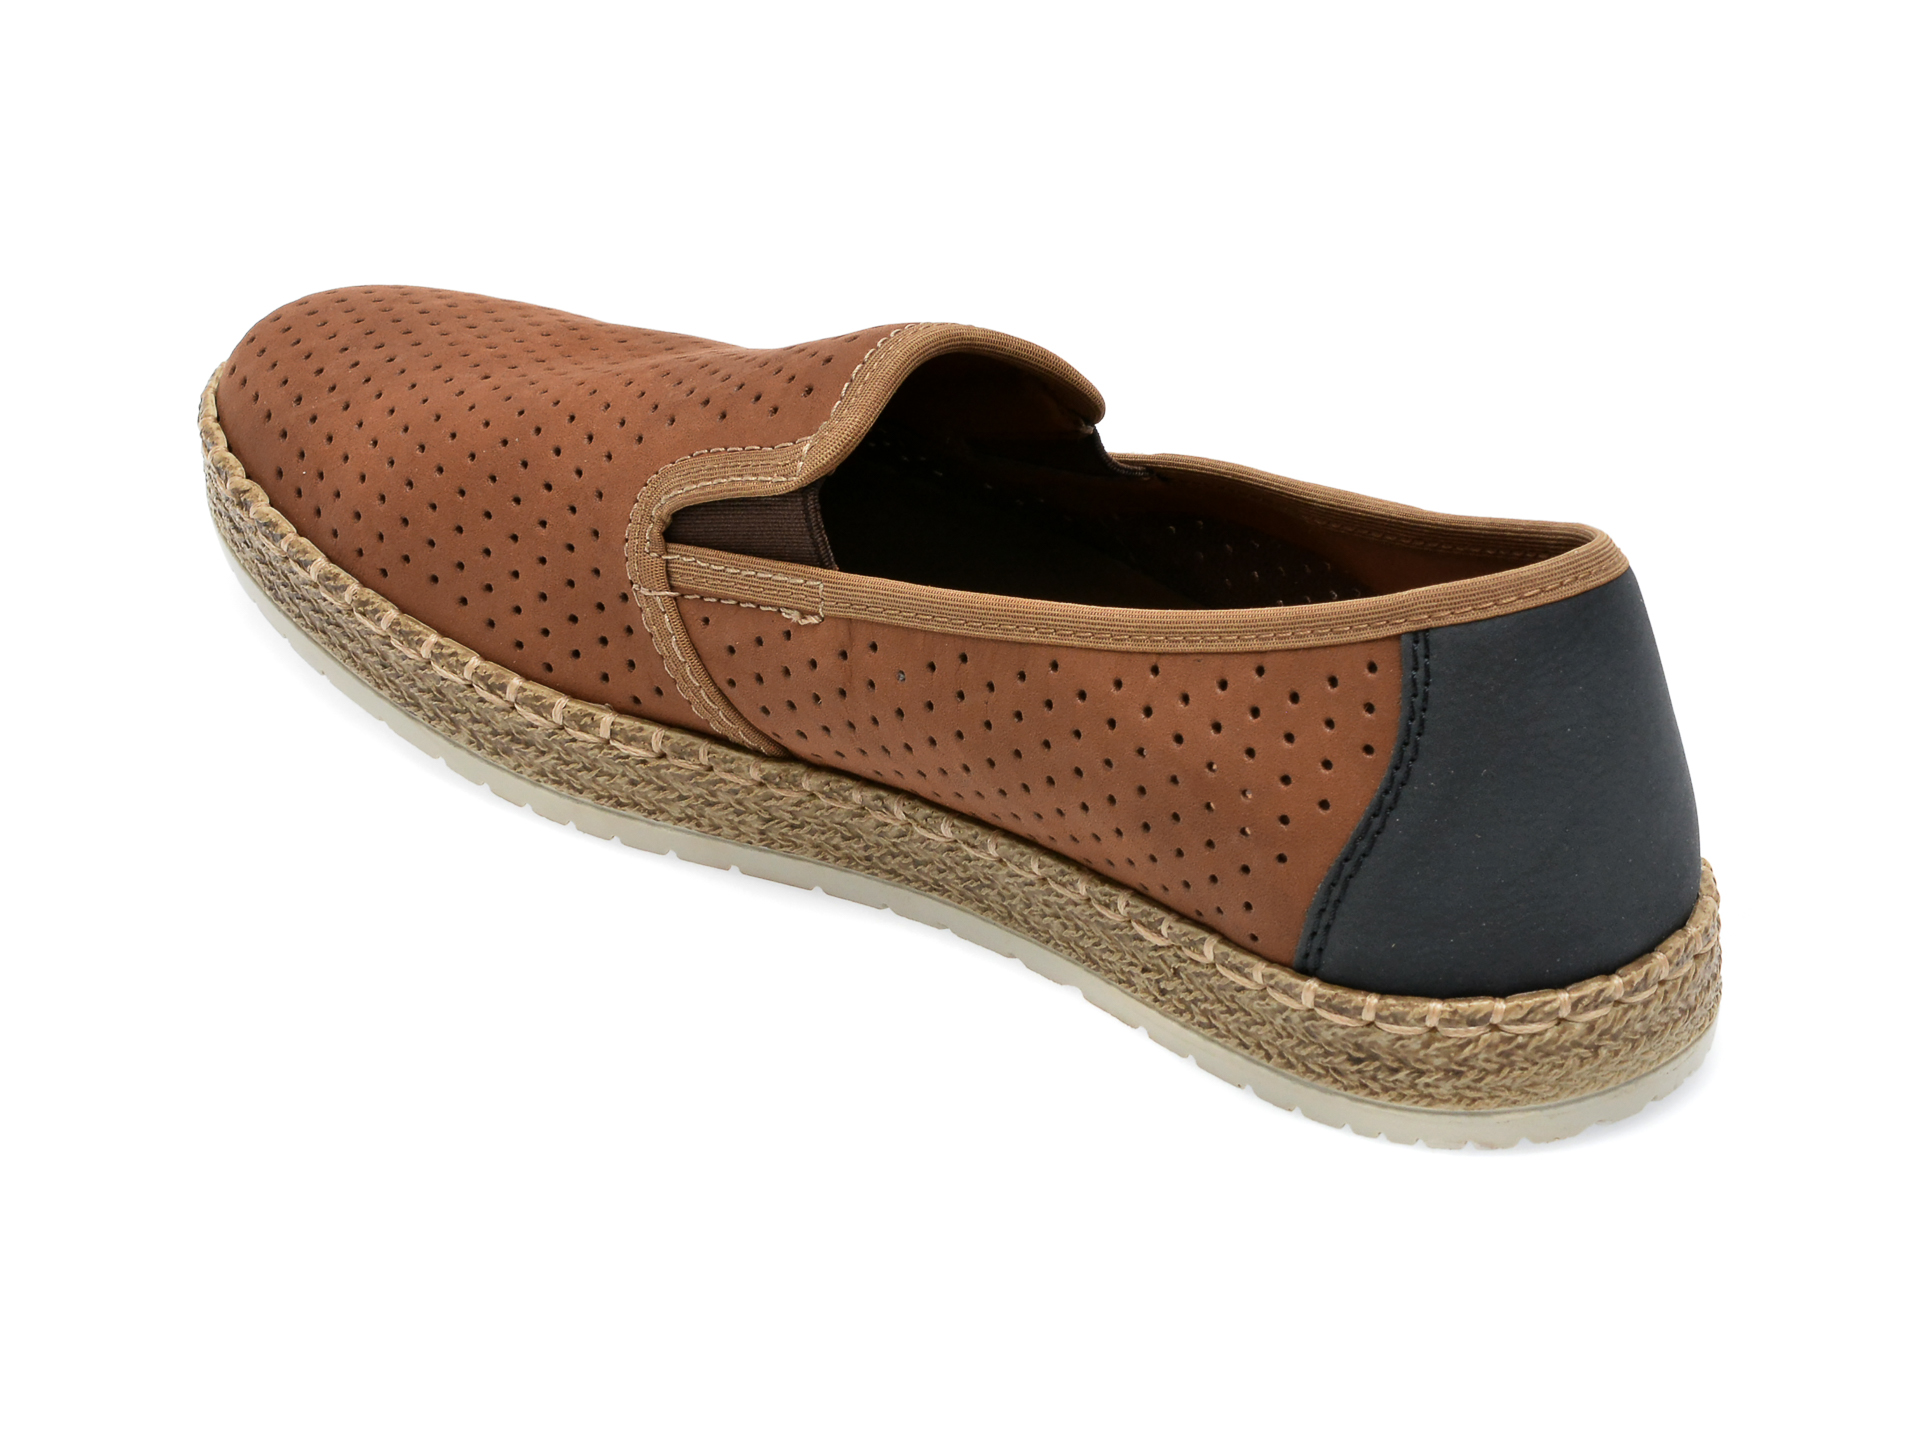 Poze Pantofi RIEKER maro, B5278, din piele naturala